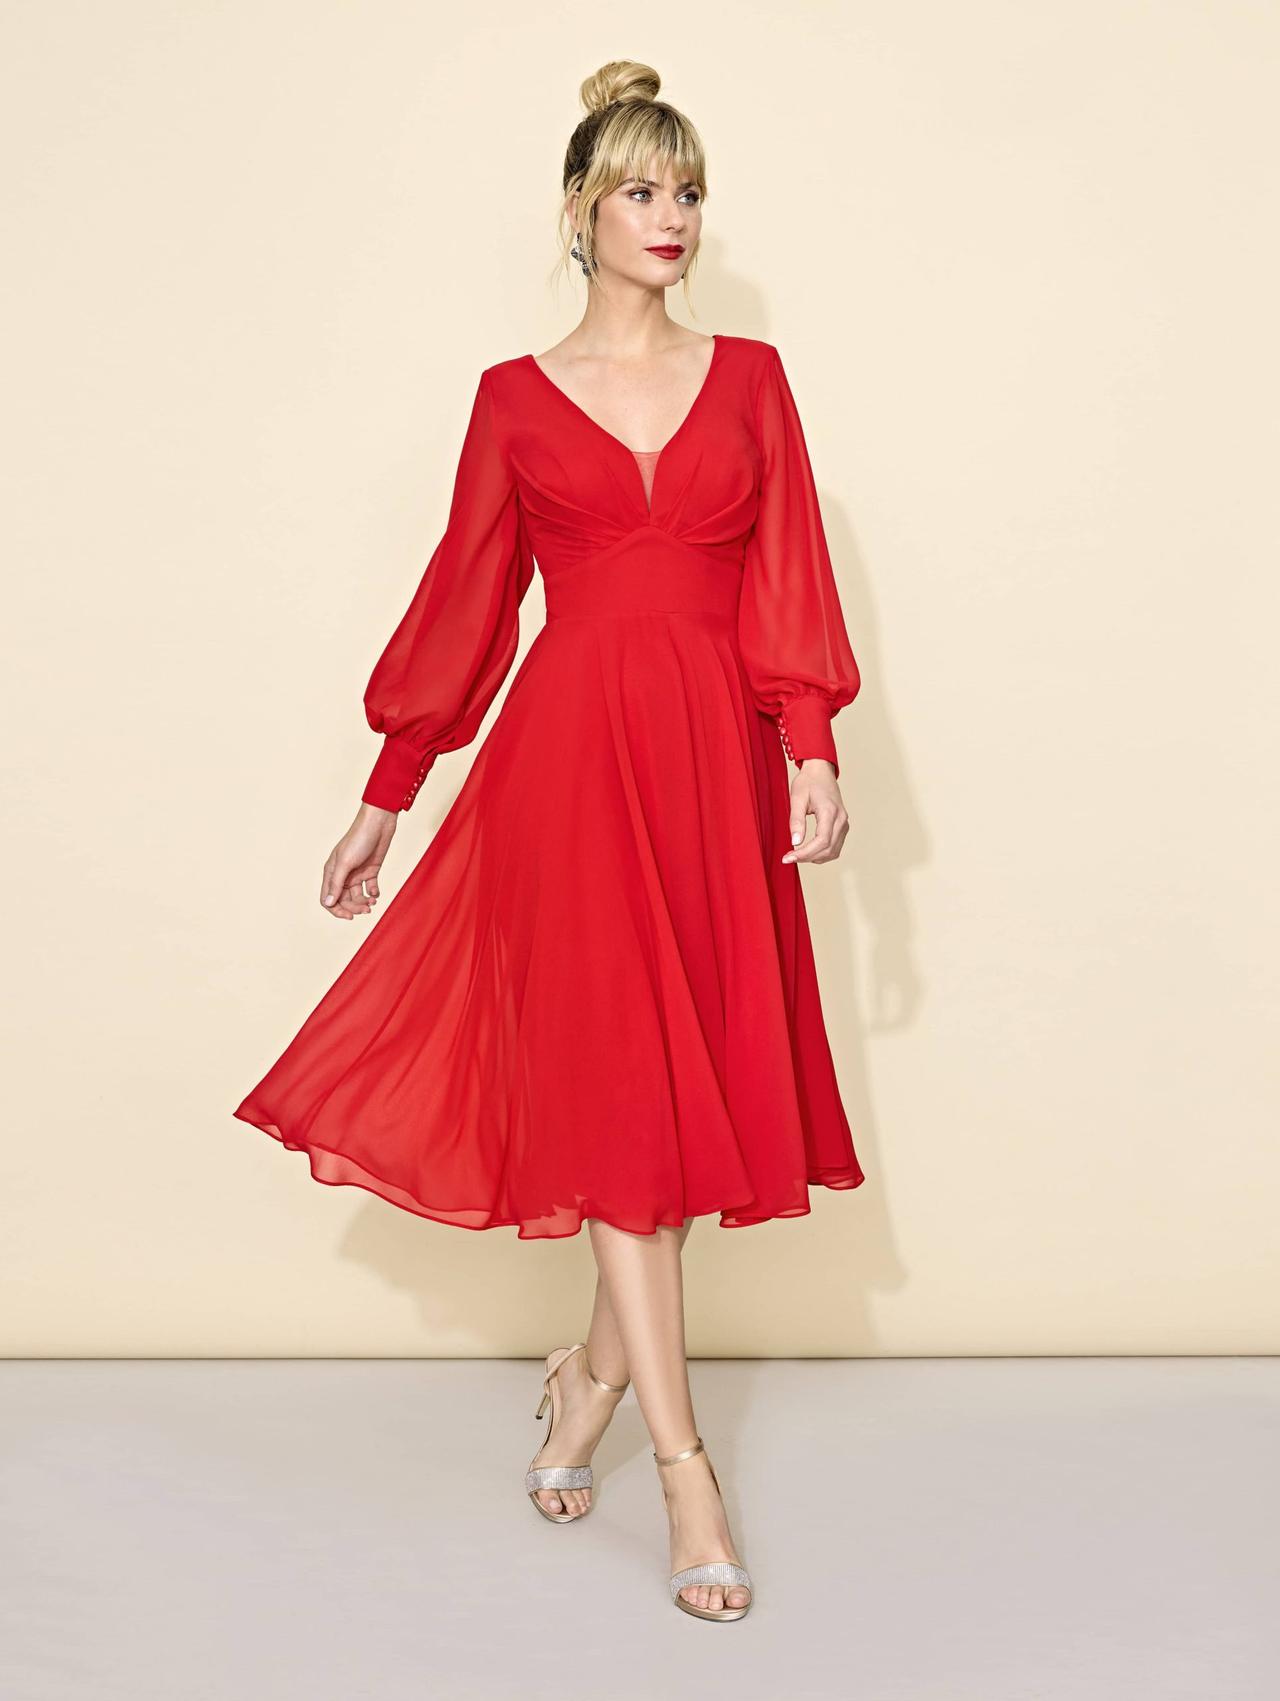 222 vestidos de fiesta para señoras: las ideas más elegantes para